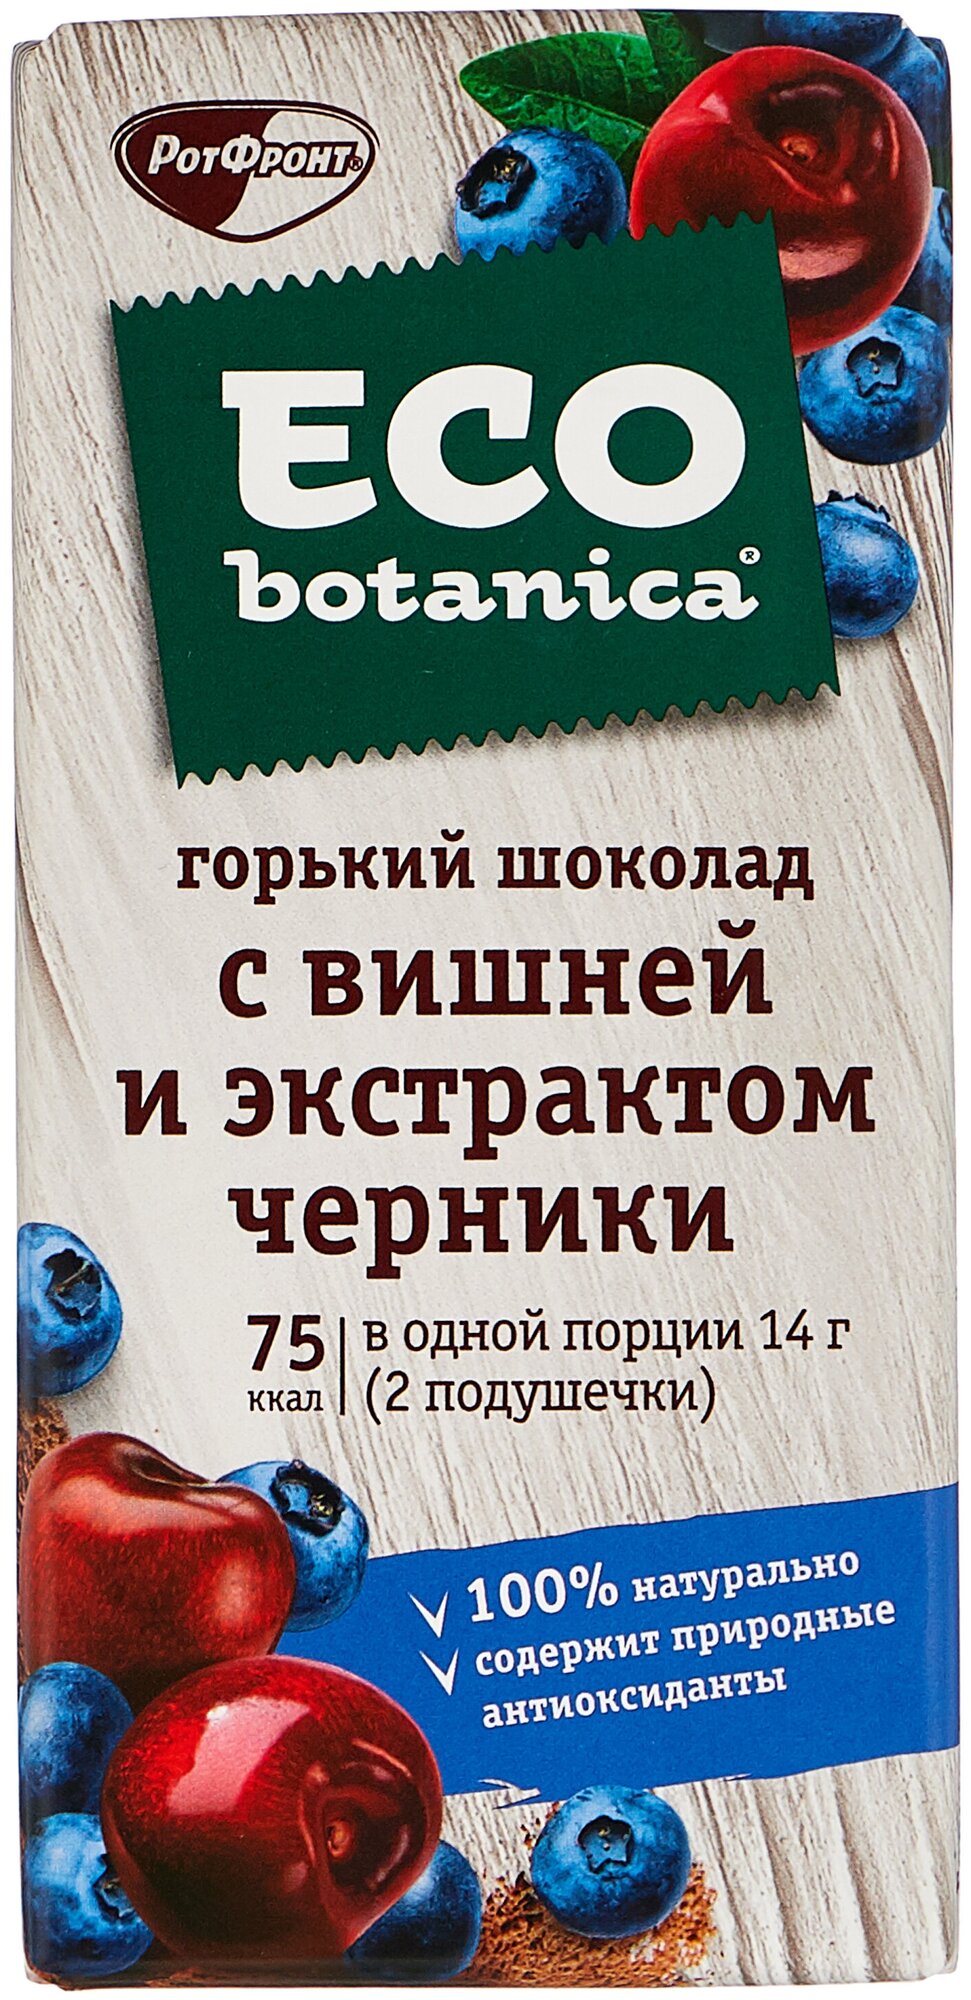 Шоколад Eco botanica горький с вишней и экстрактом черники